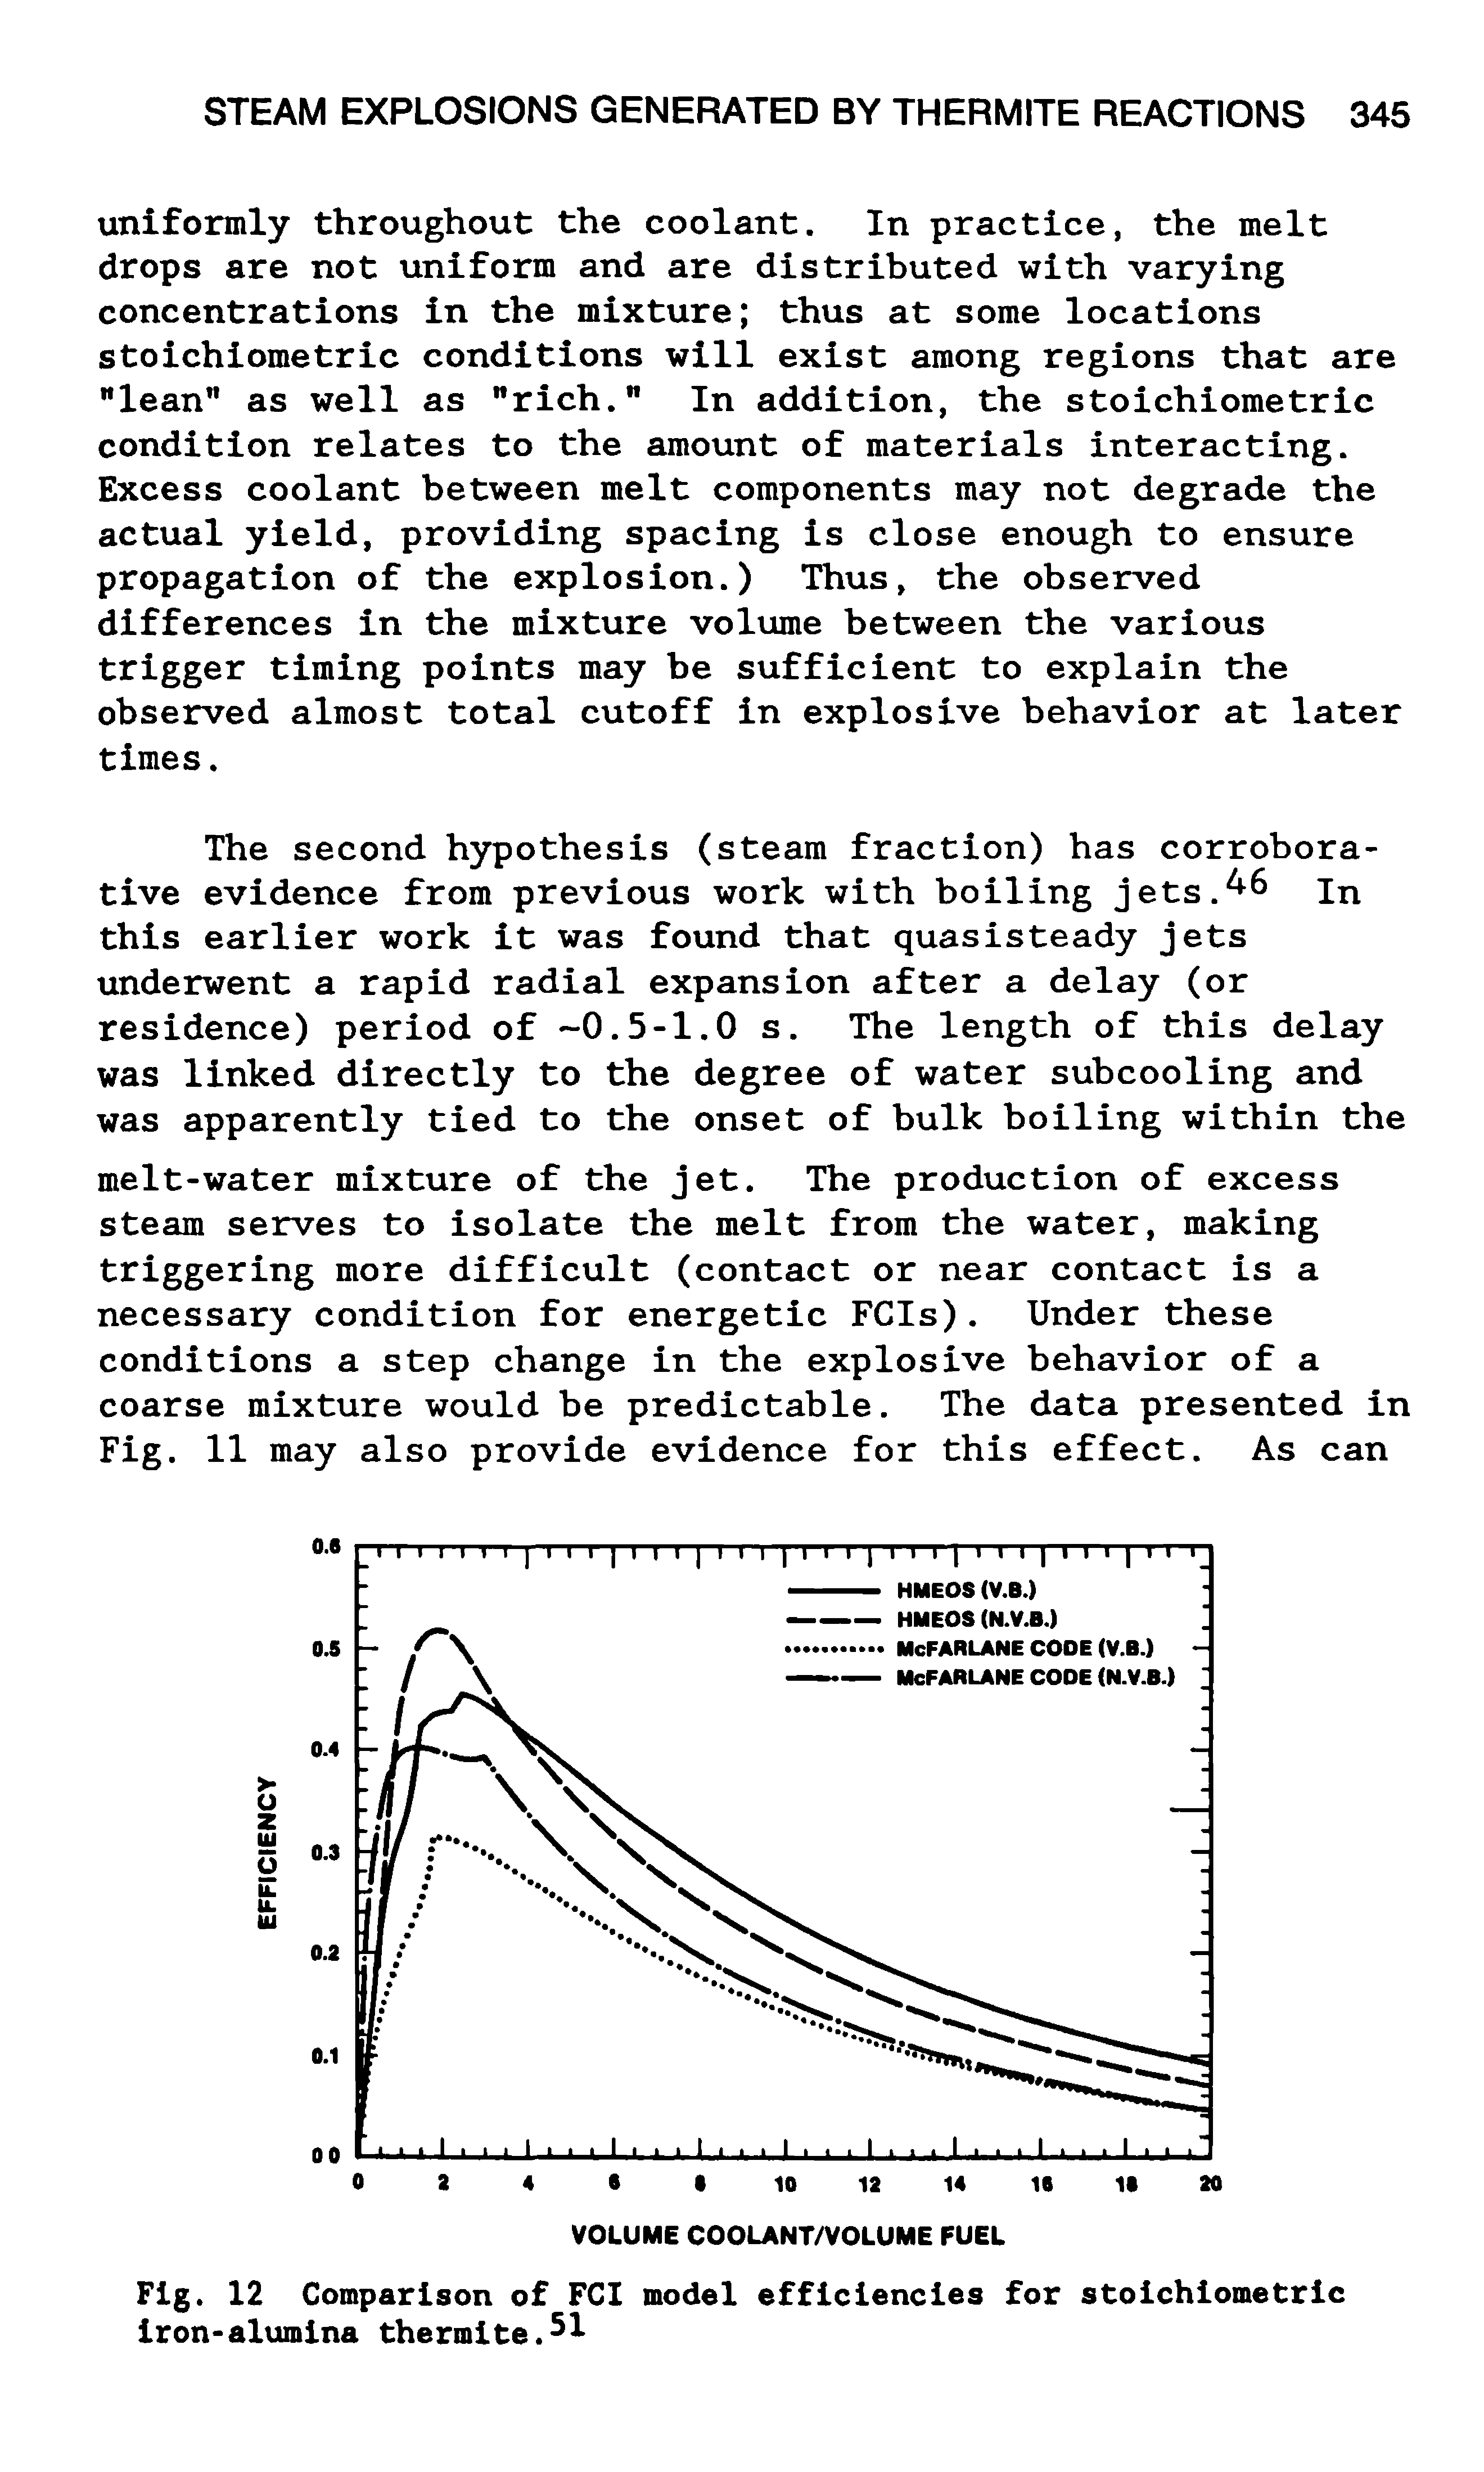 Fig. 12 Comparison of FCI model efficiencies for stoichiometric Iron-alximlna thermite.